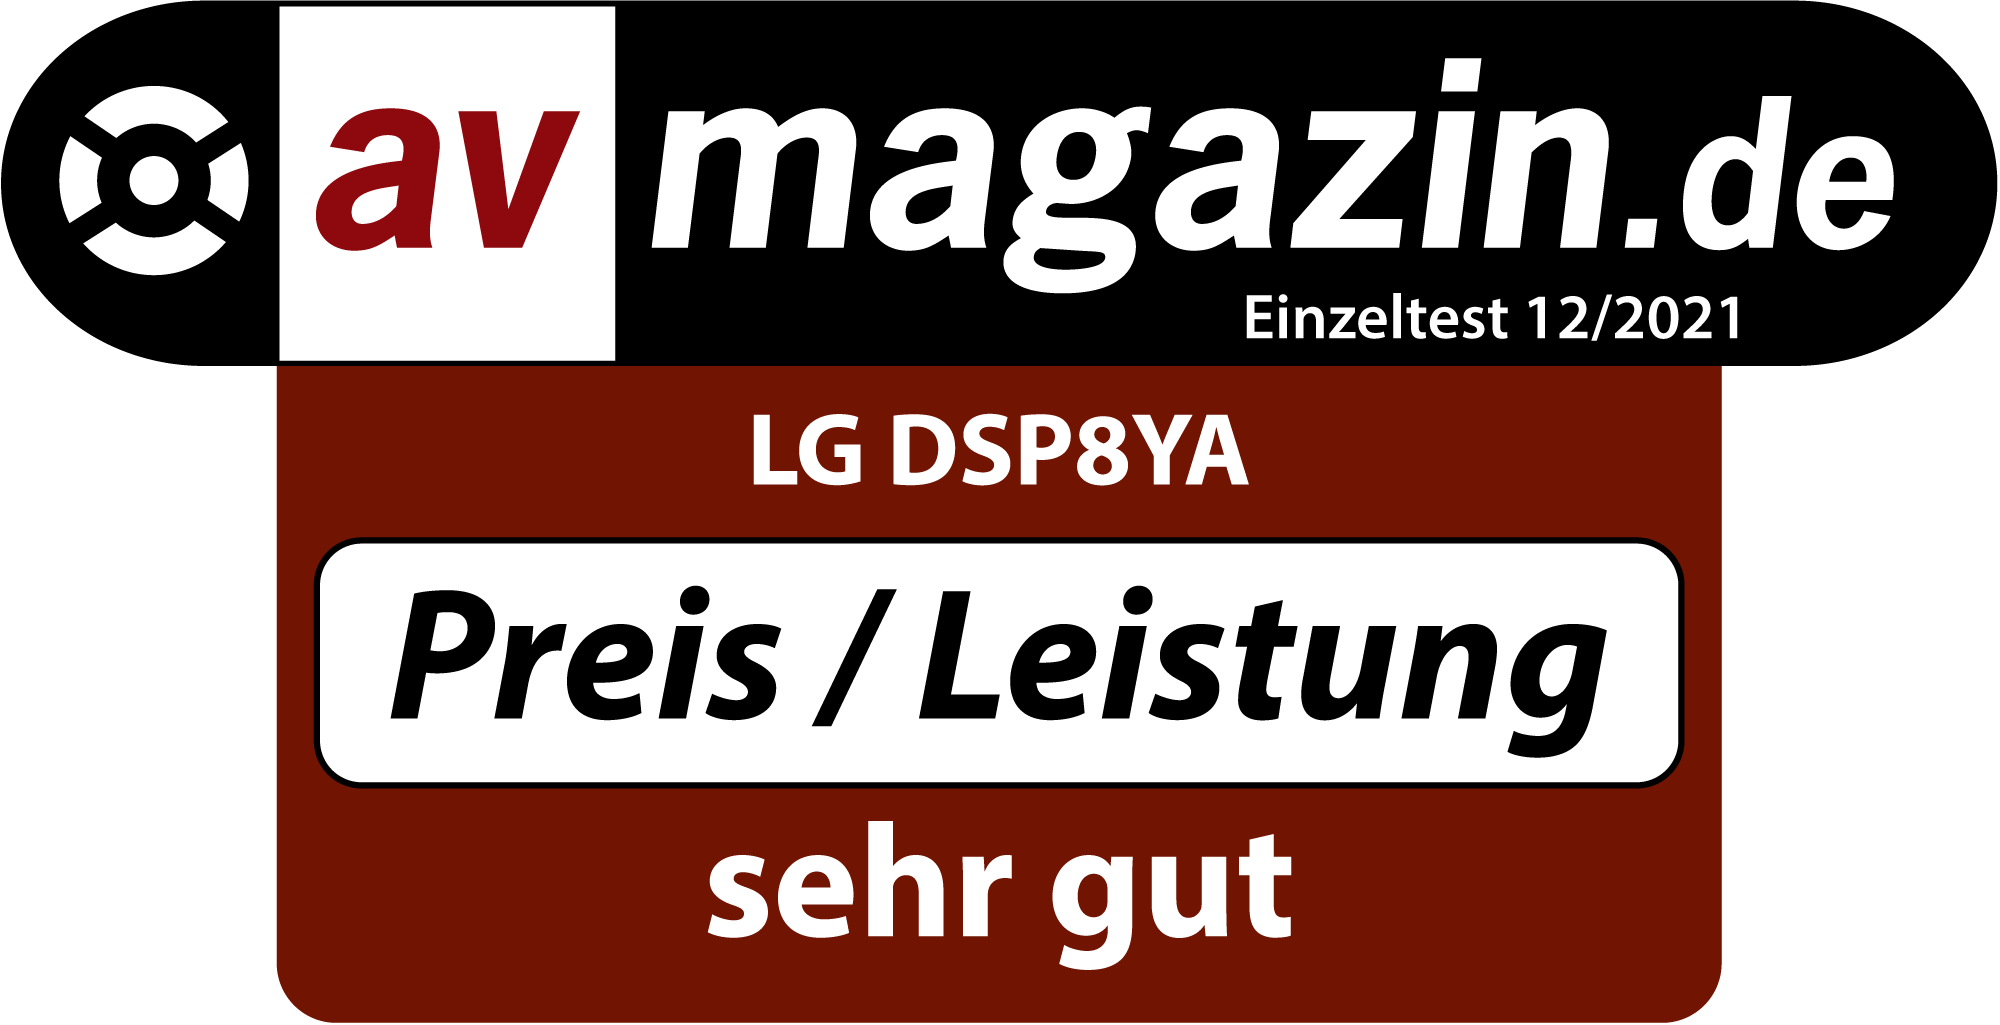 LG DSP8YA AV magazine.de